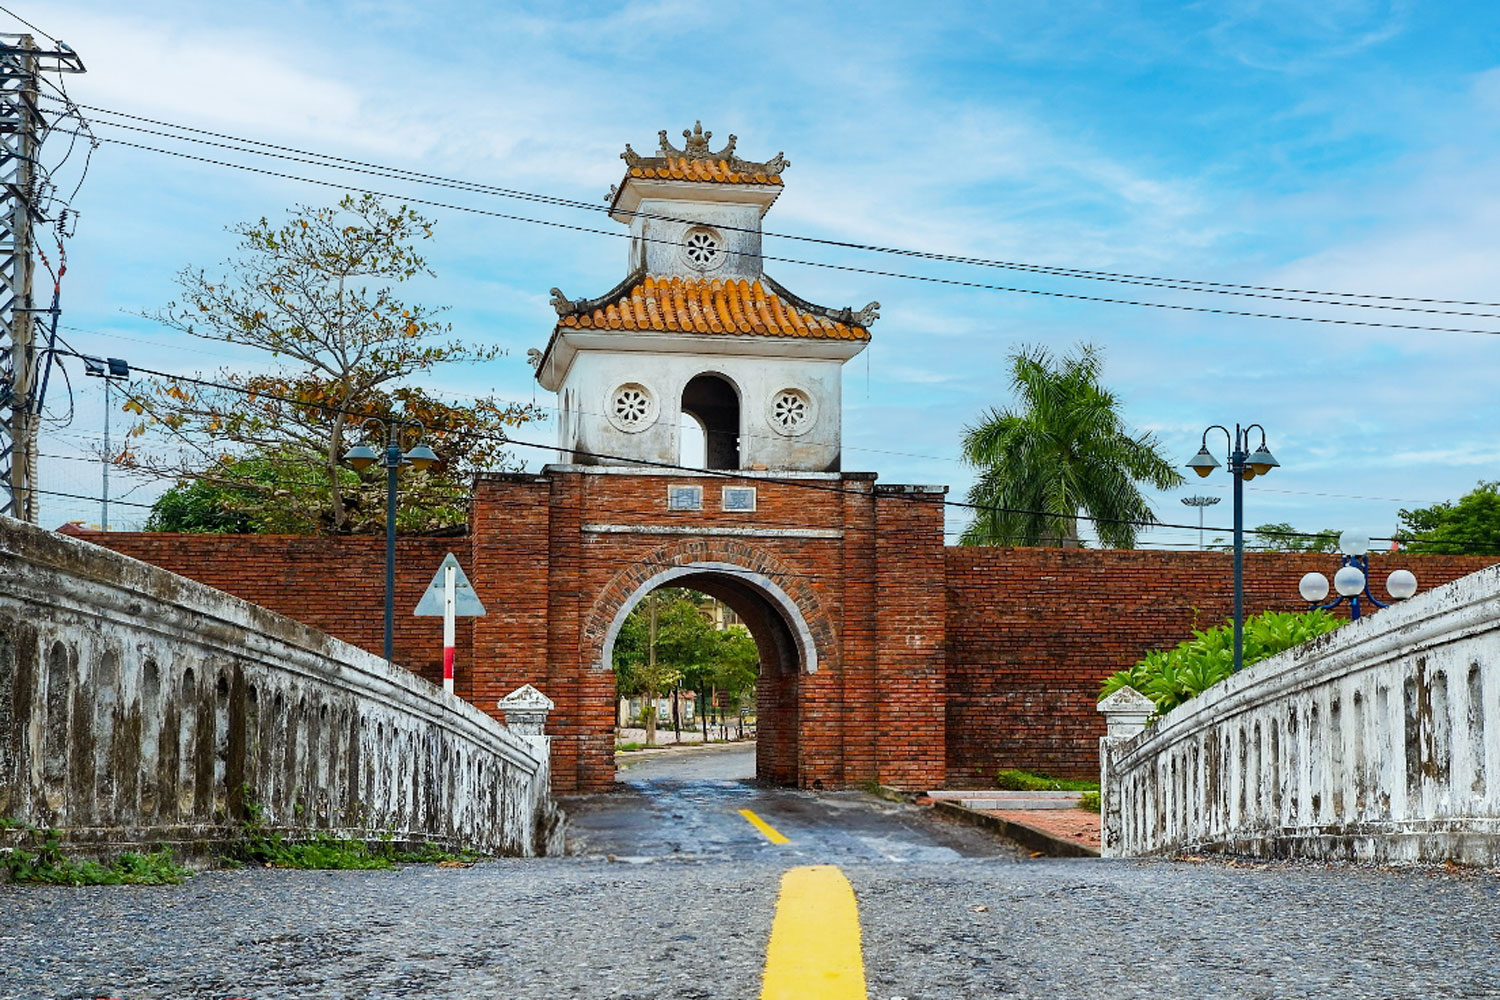 Thành cổ Đồng Hới nơi đã ghi dấu nhiều sự kiện lịch sử quan trọng, đánh dấu sự thắng lợi trong công cuộc Bắc tiến của 9 đời chúa Nguyễn.